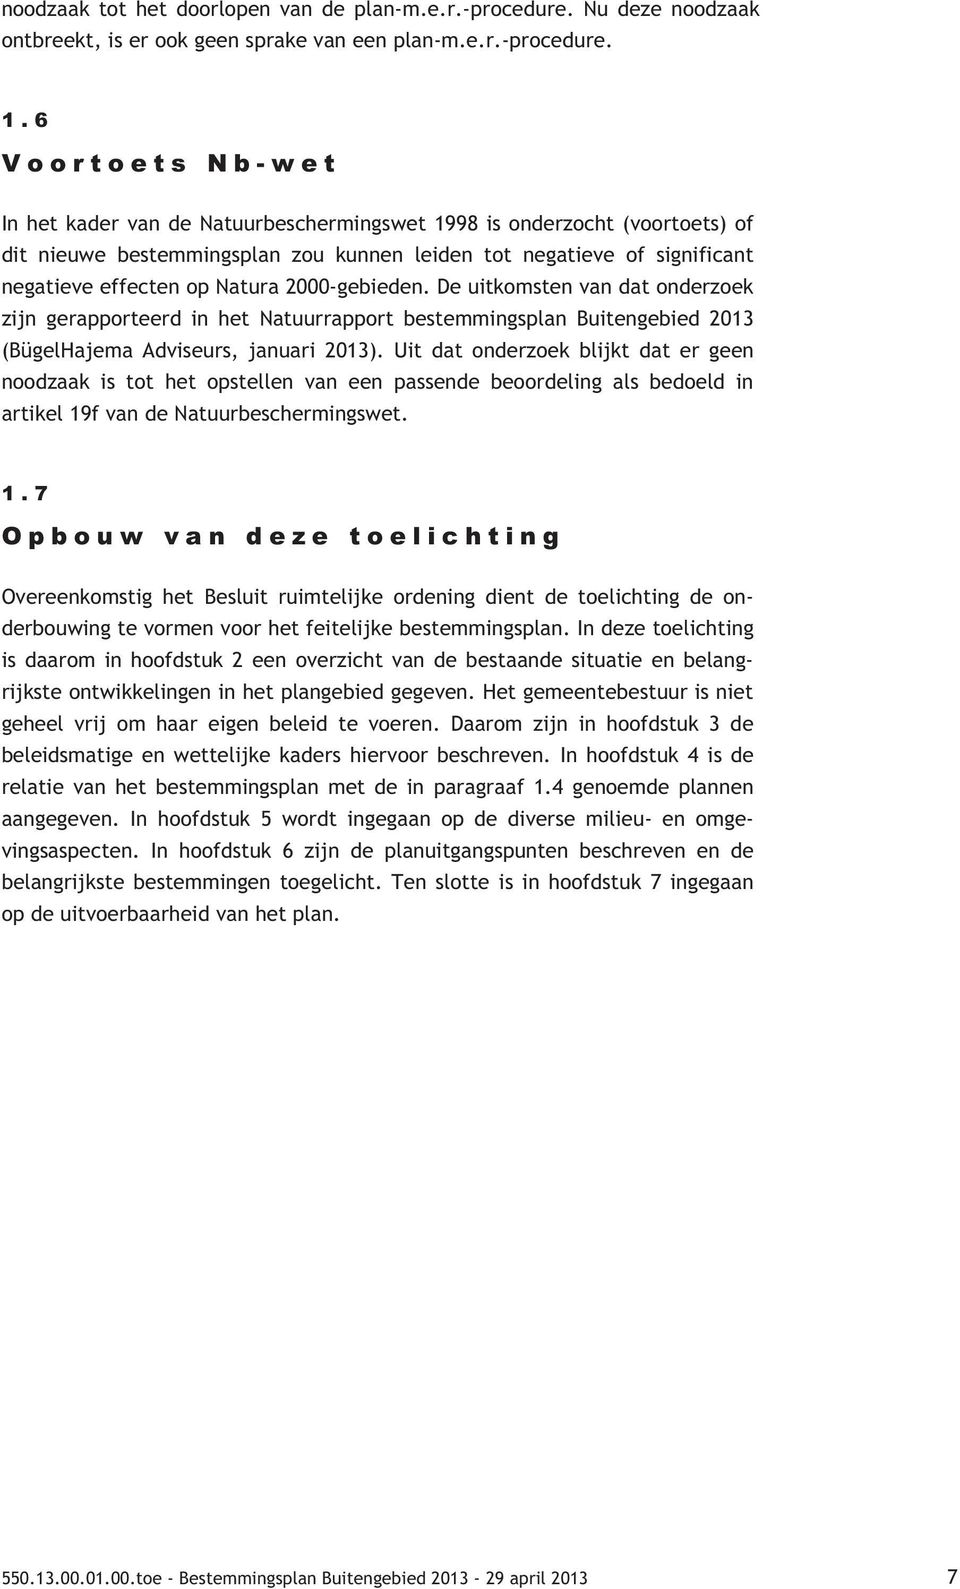 2000-gebieden. De uitkomsten van dat onderzoek zijn gerapporteerd in het Natuurrapport bestemmingsplan Buitengebied 2013 (BügelHajema Adviseurs, januari 2013).